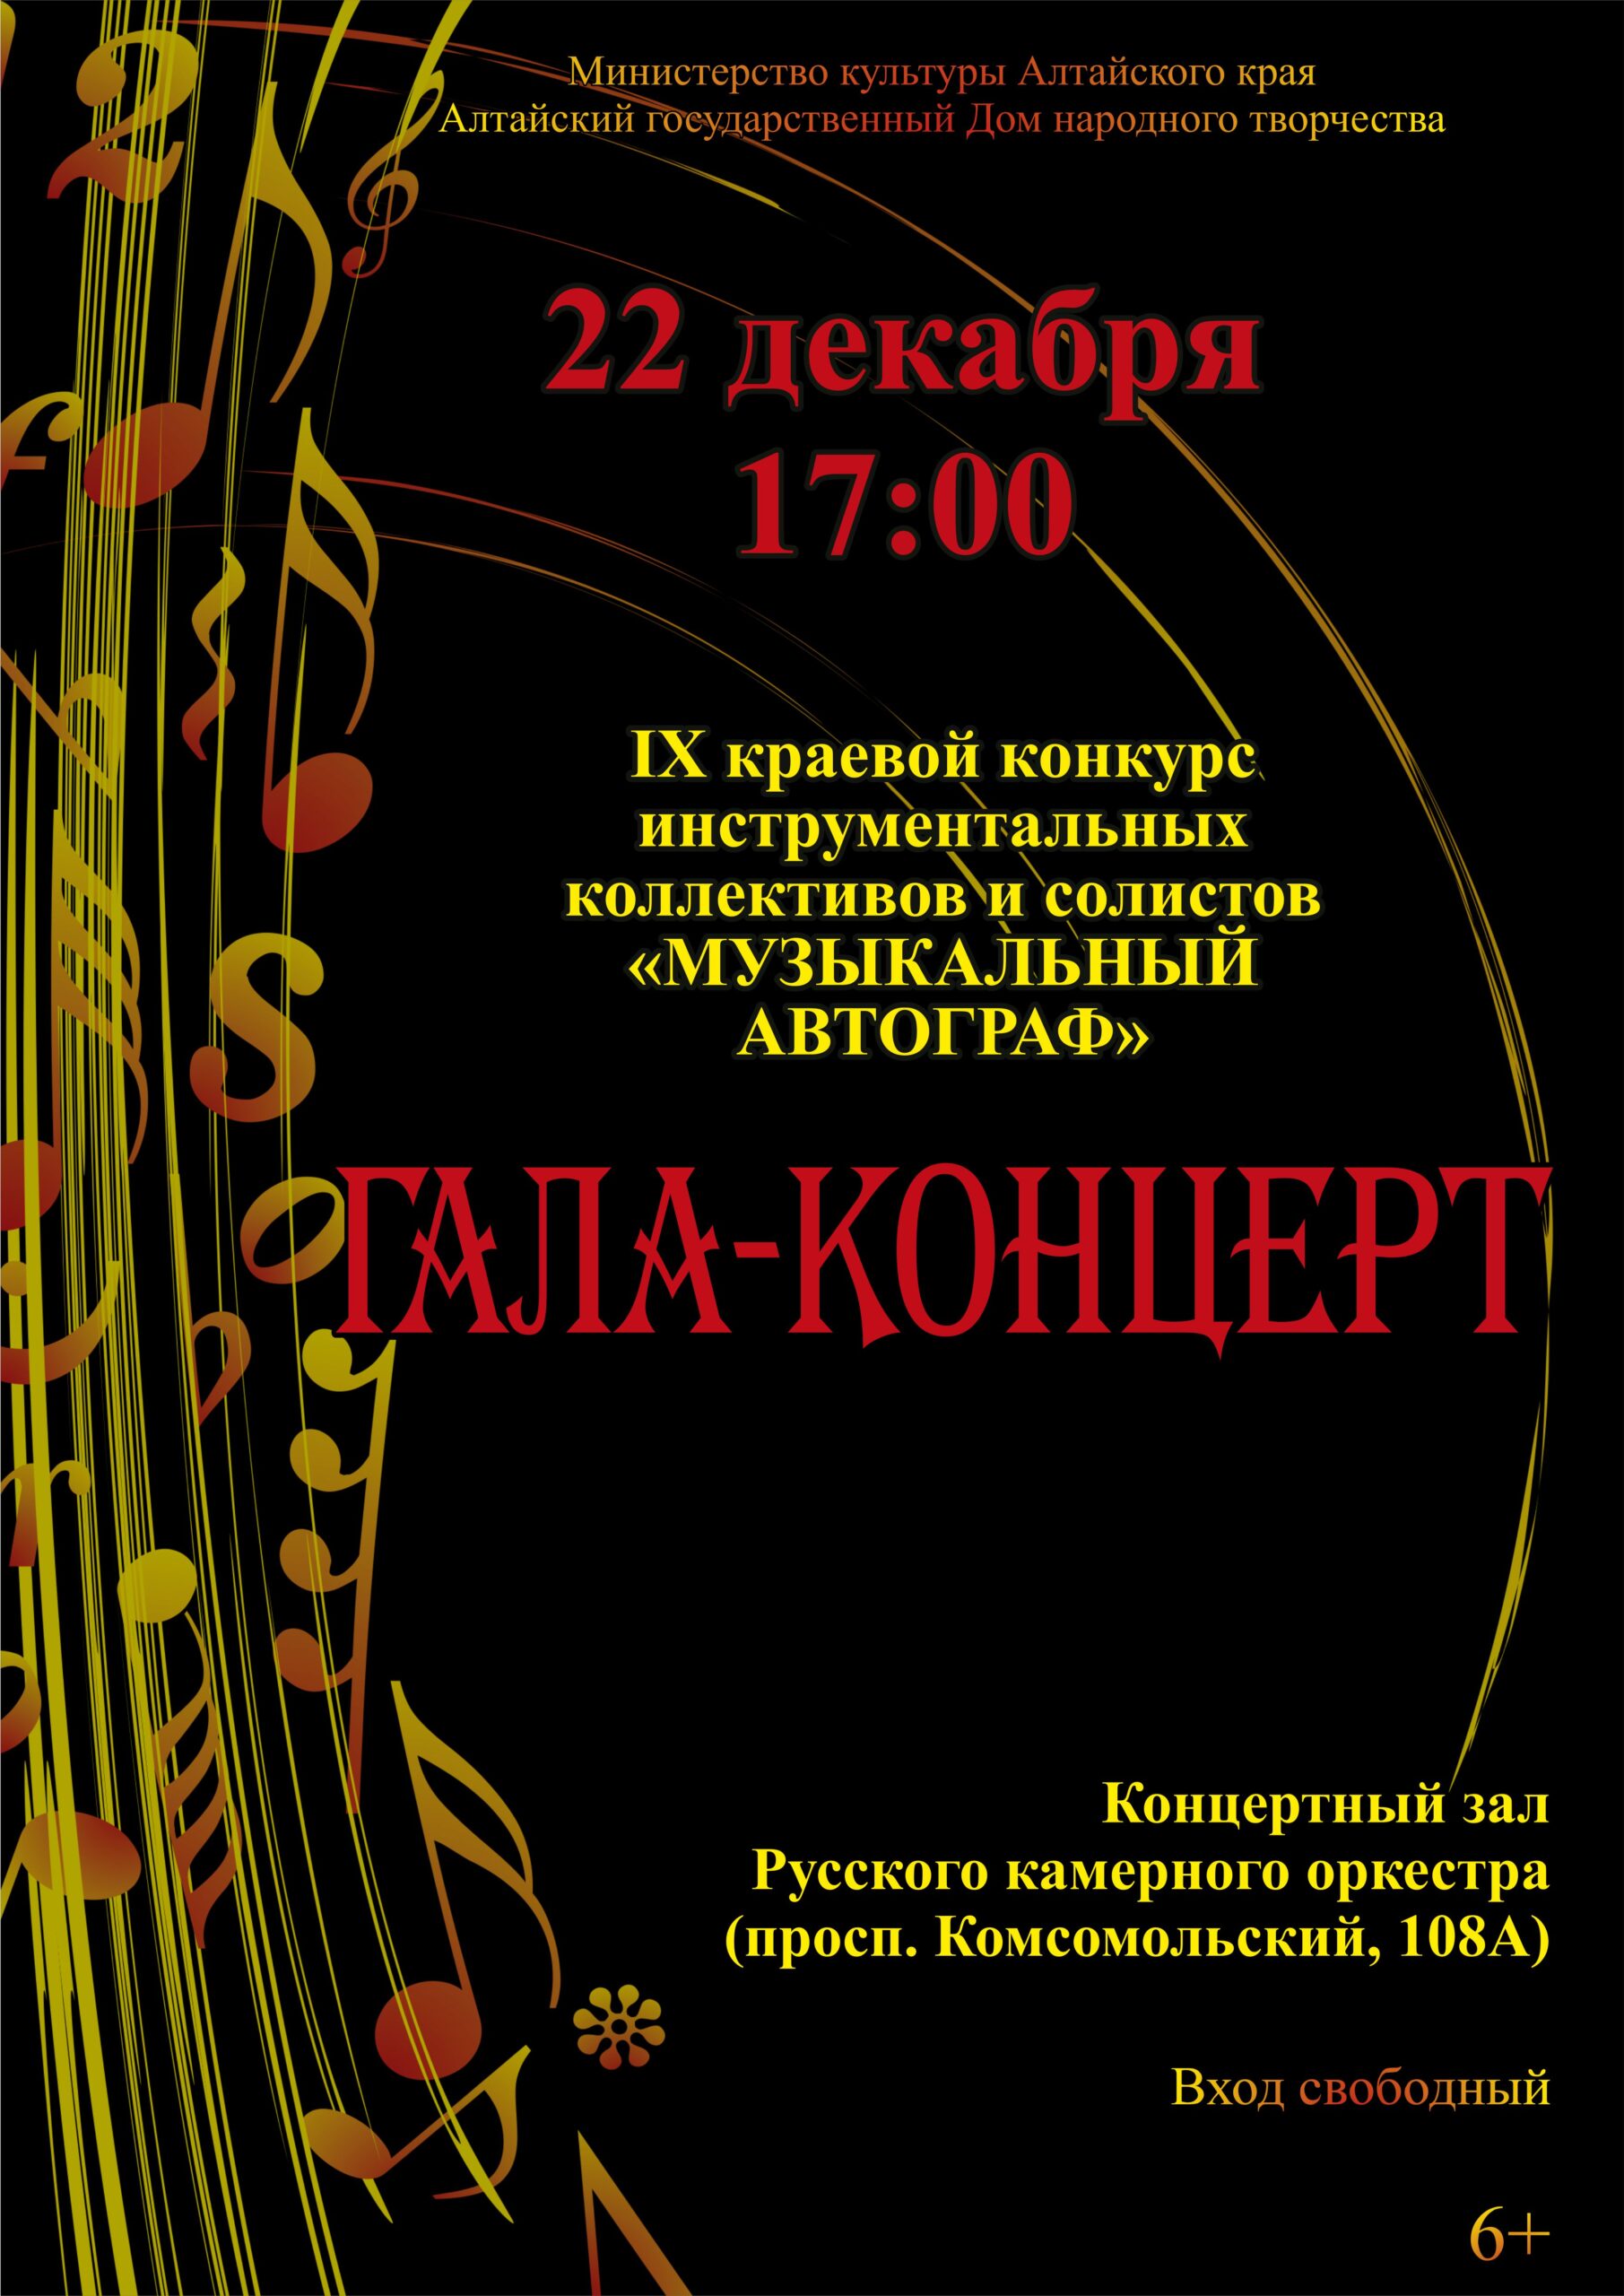 Гала-концерт IX краевого видеоконкурса инструментальных коллективов и солистов «Музыкальный автограф» состоится 22 декабря в Барнауле